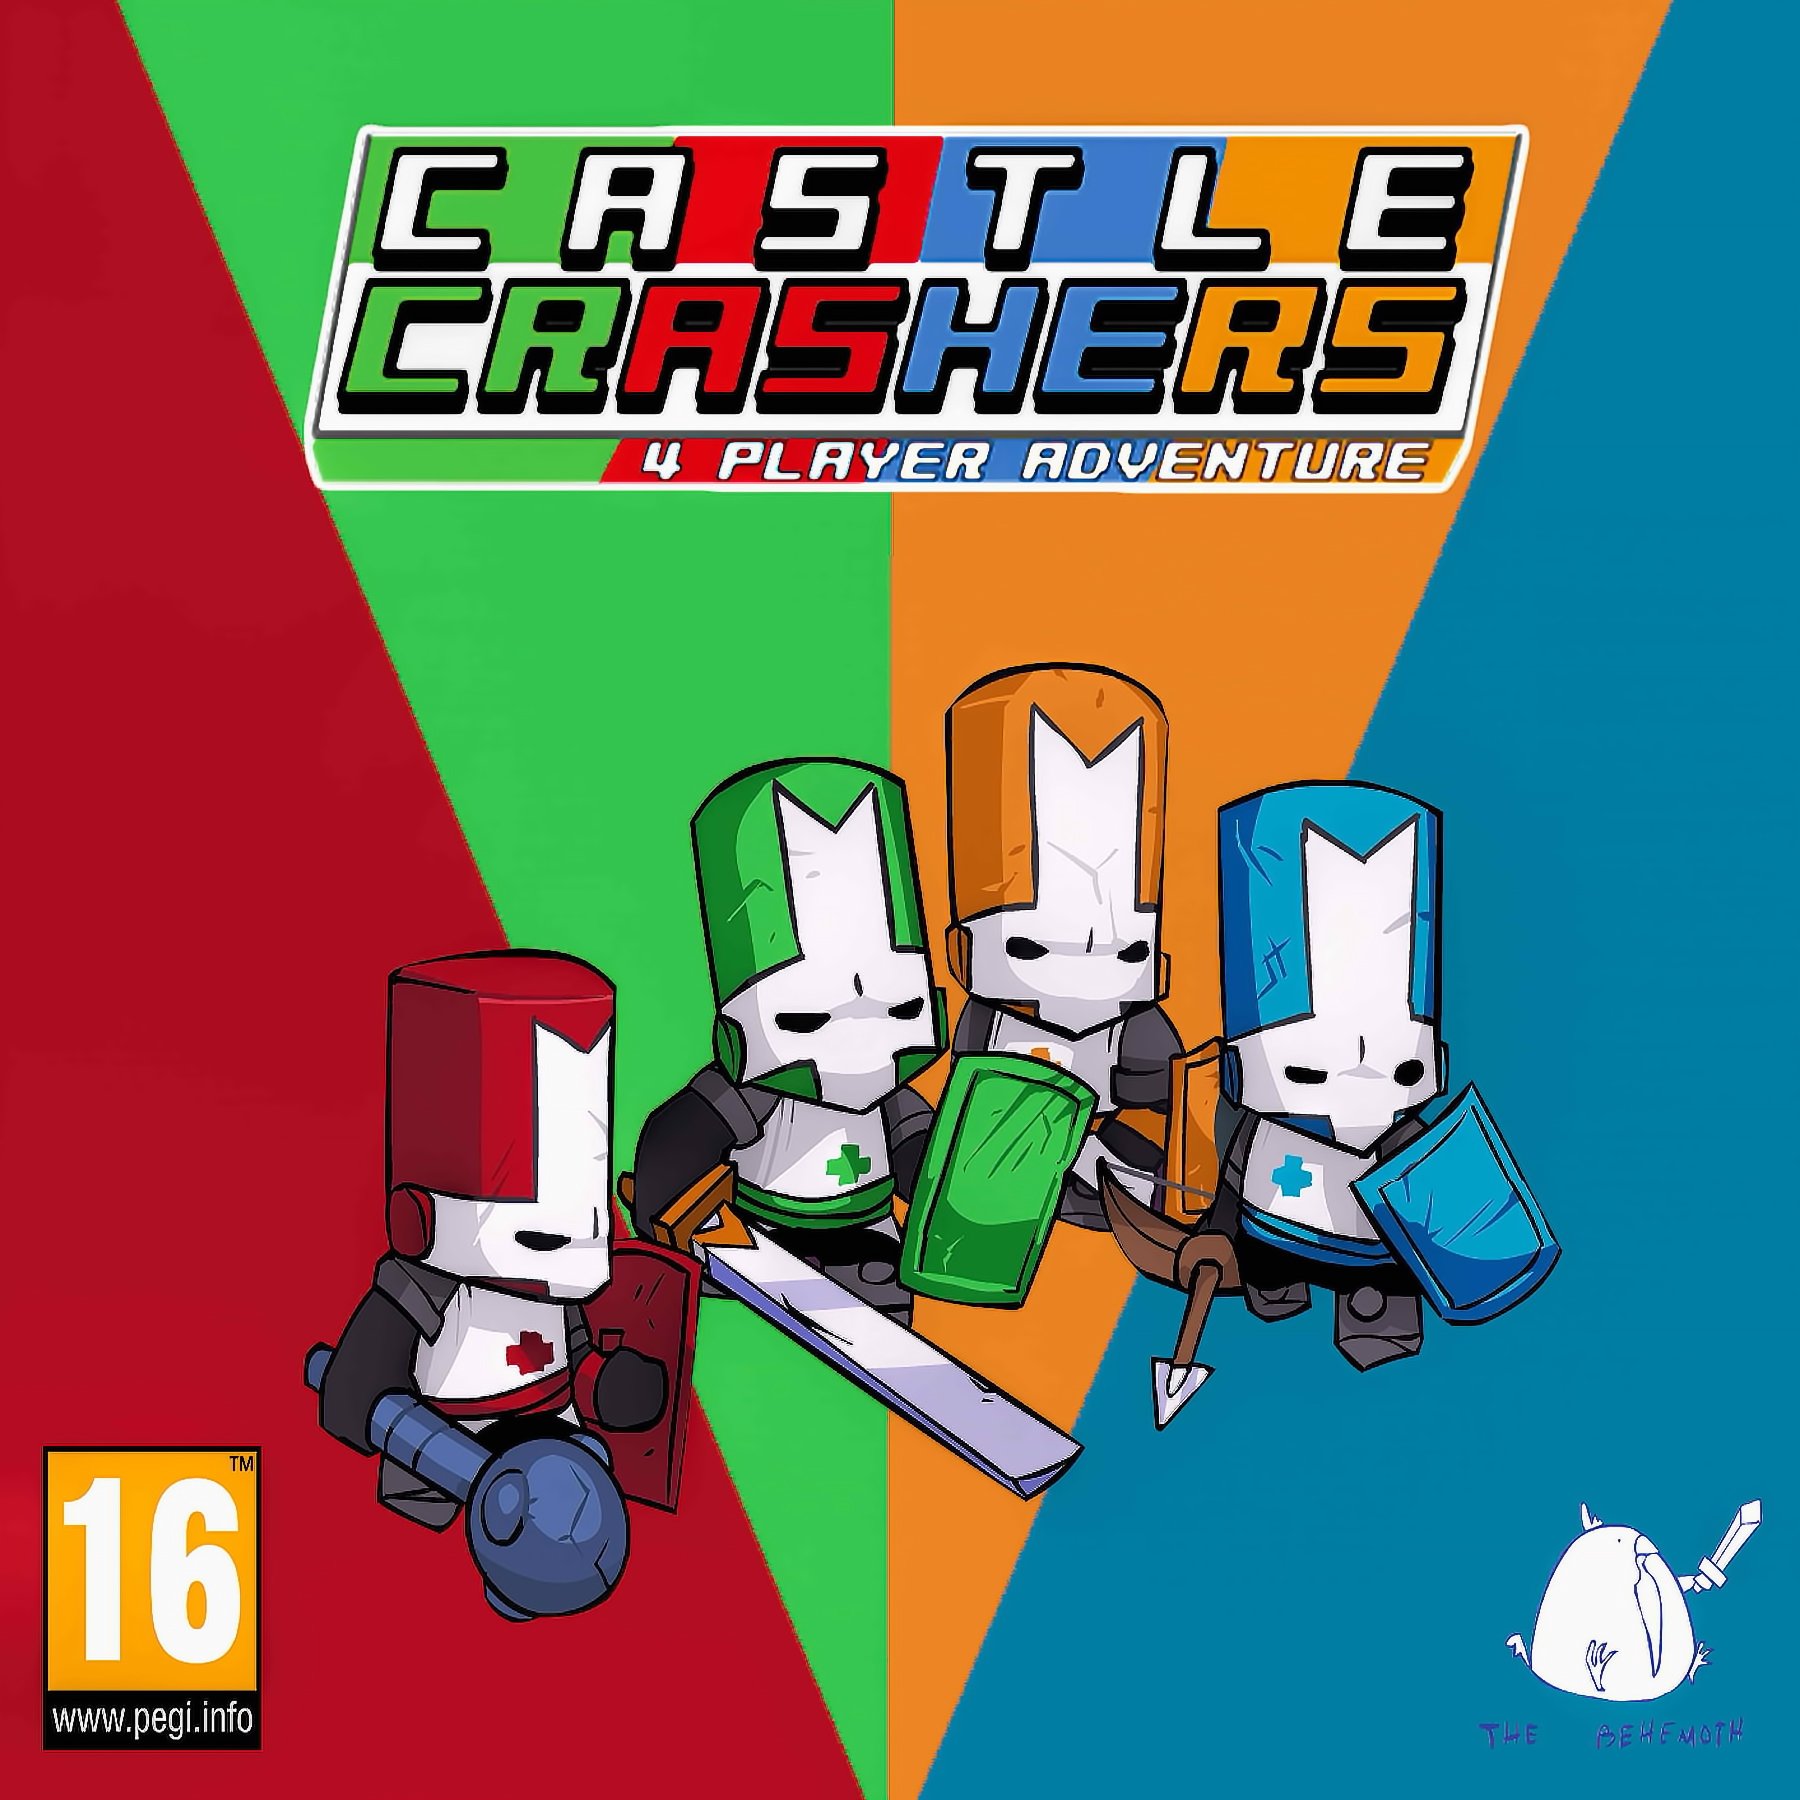 Castle Crashers pode estar vindo ao Switch